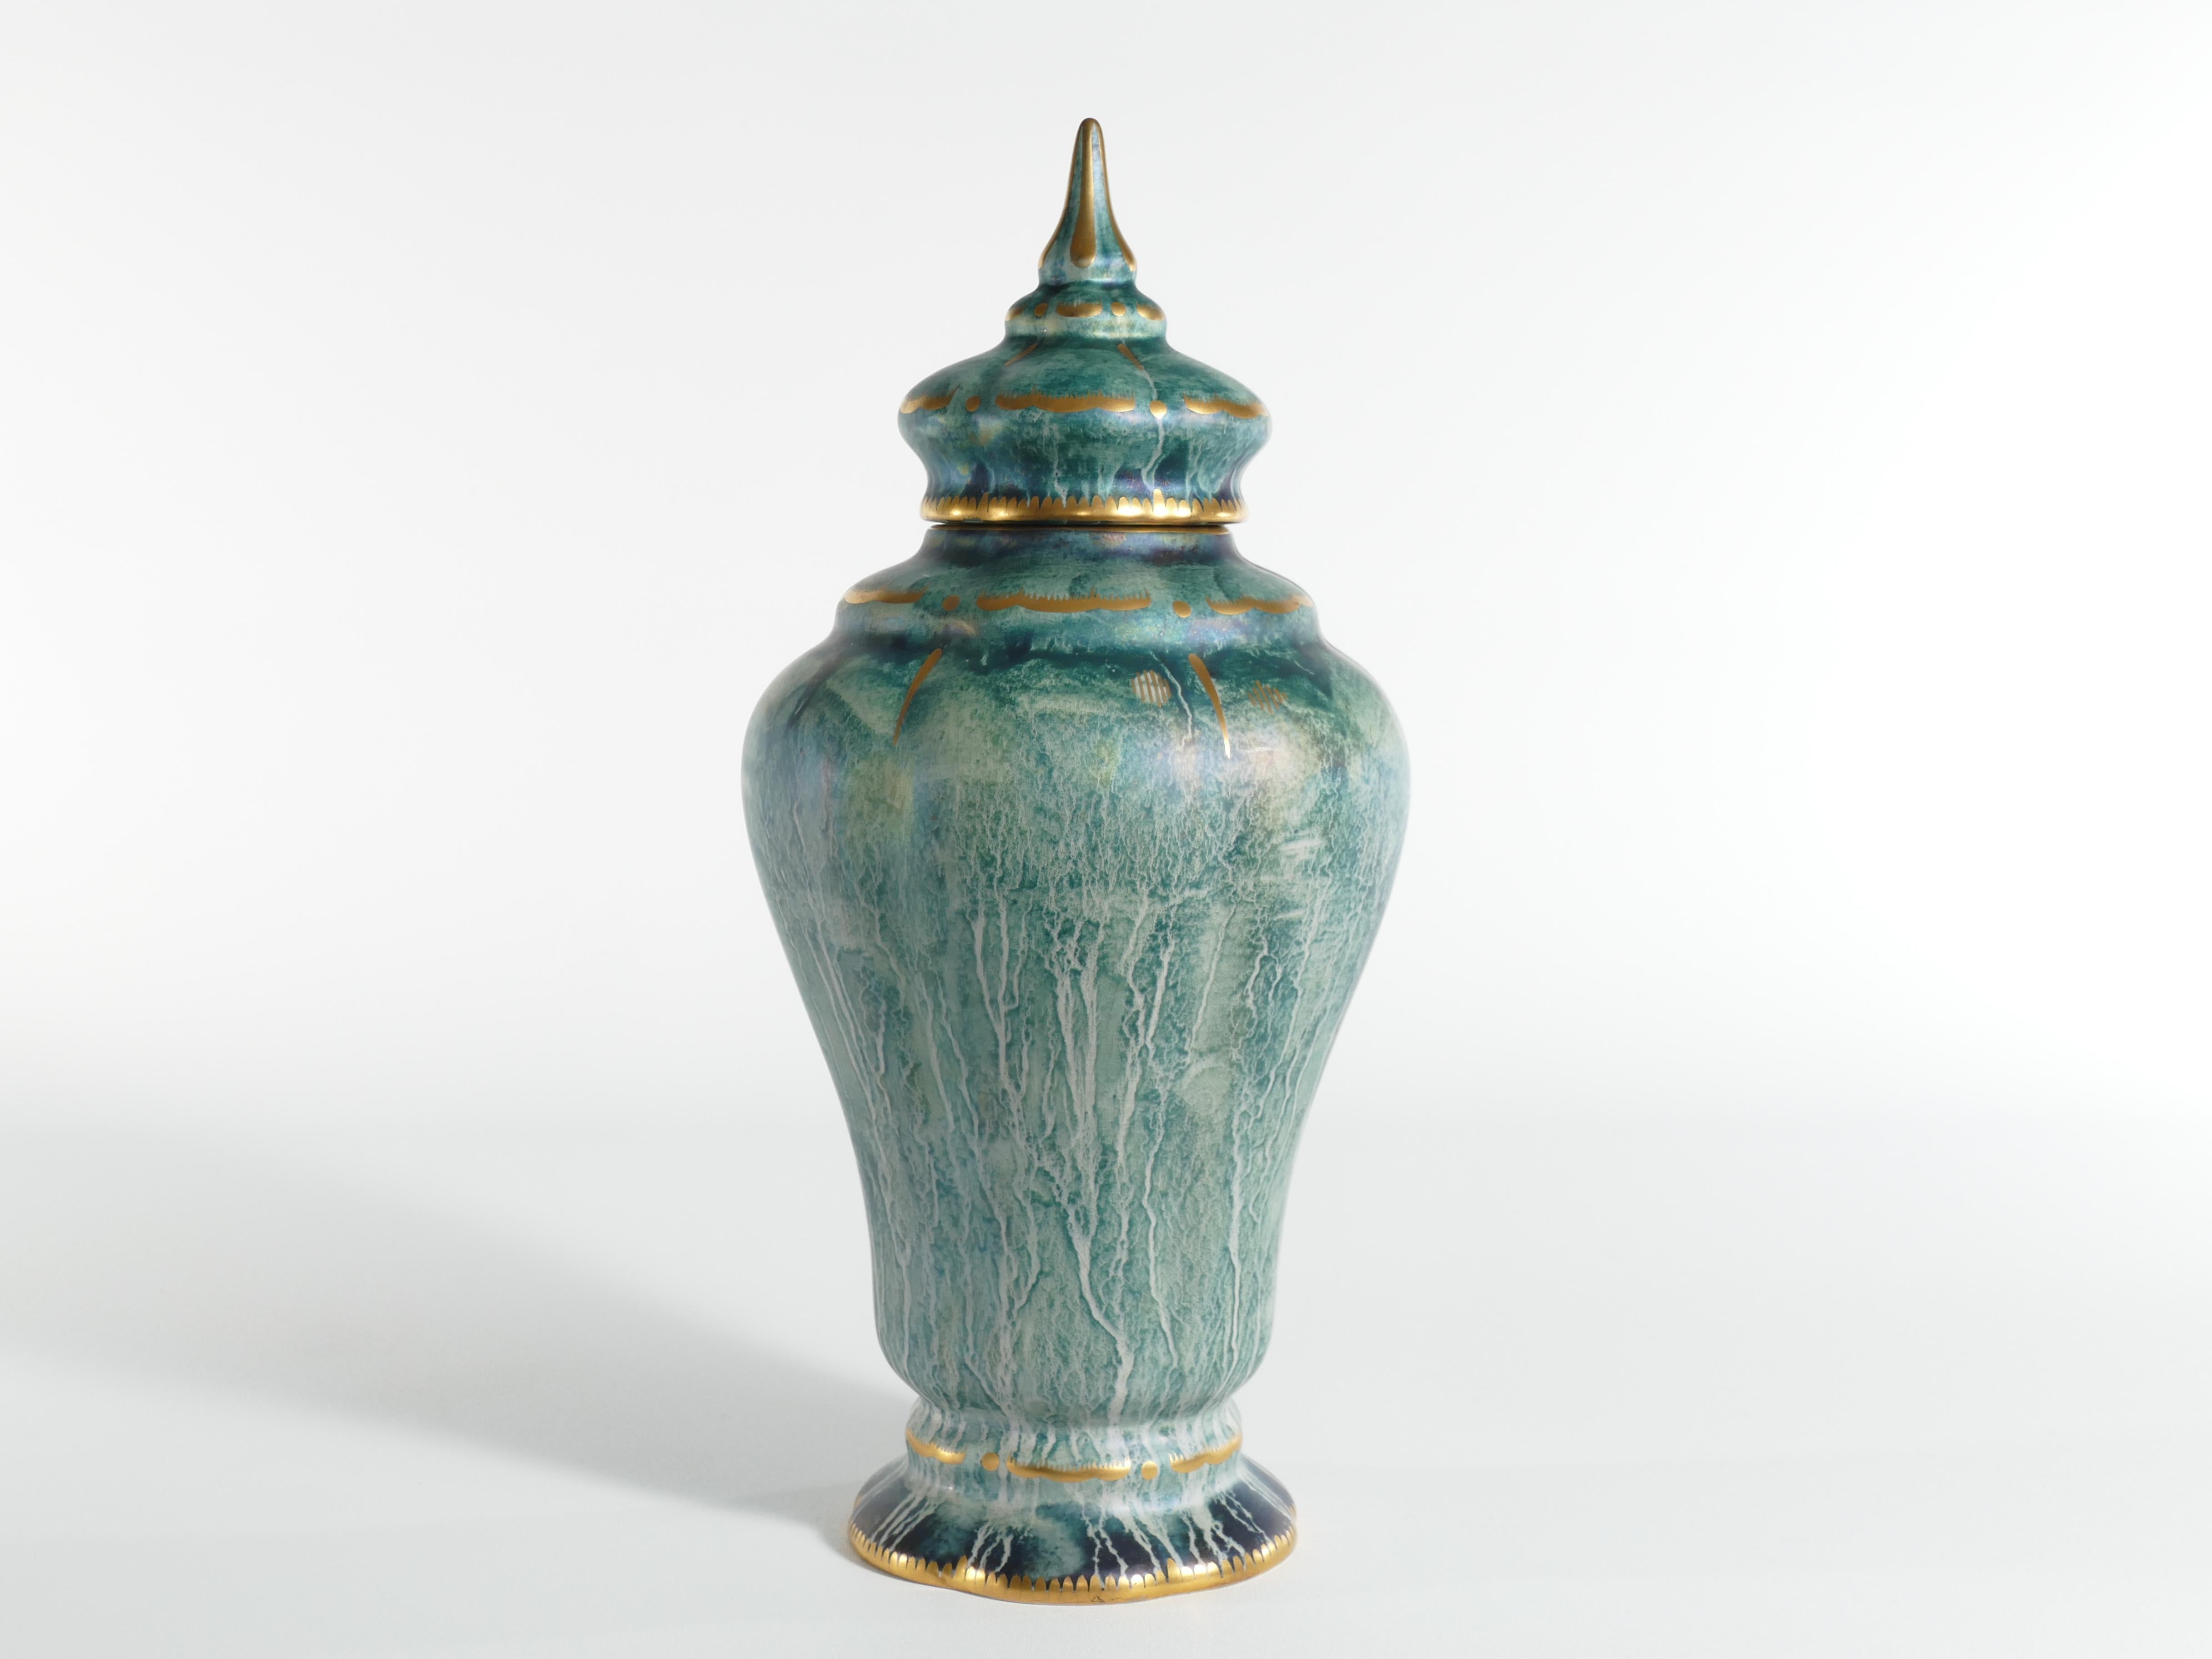 Ce grand et exquis vase à couvercle, fait à la main, est habilement fabriqué par le célèbre artiste céramiste suédois Josef Ekberg. Il est reconnu comme l'un des plus grands artistes céramistes suédois de son époque.

Cette pièce est une splendide